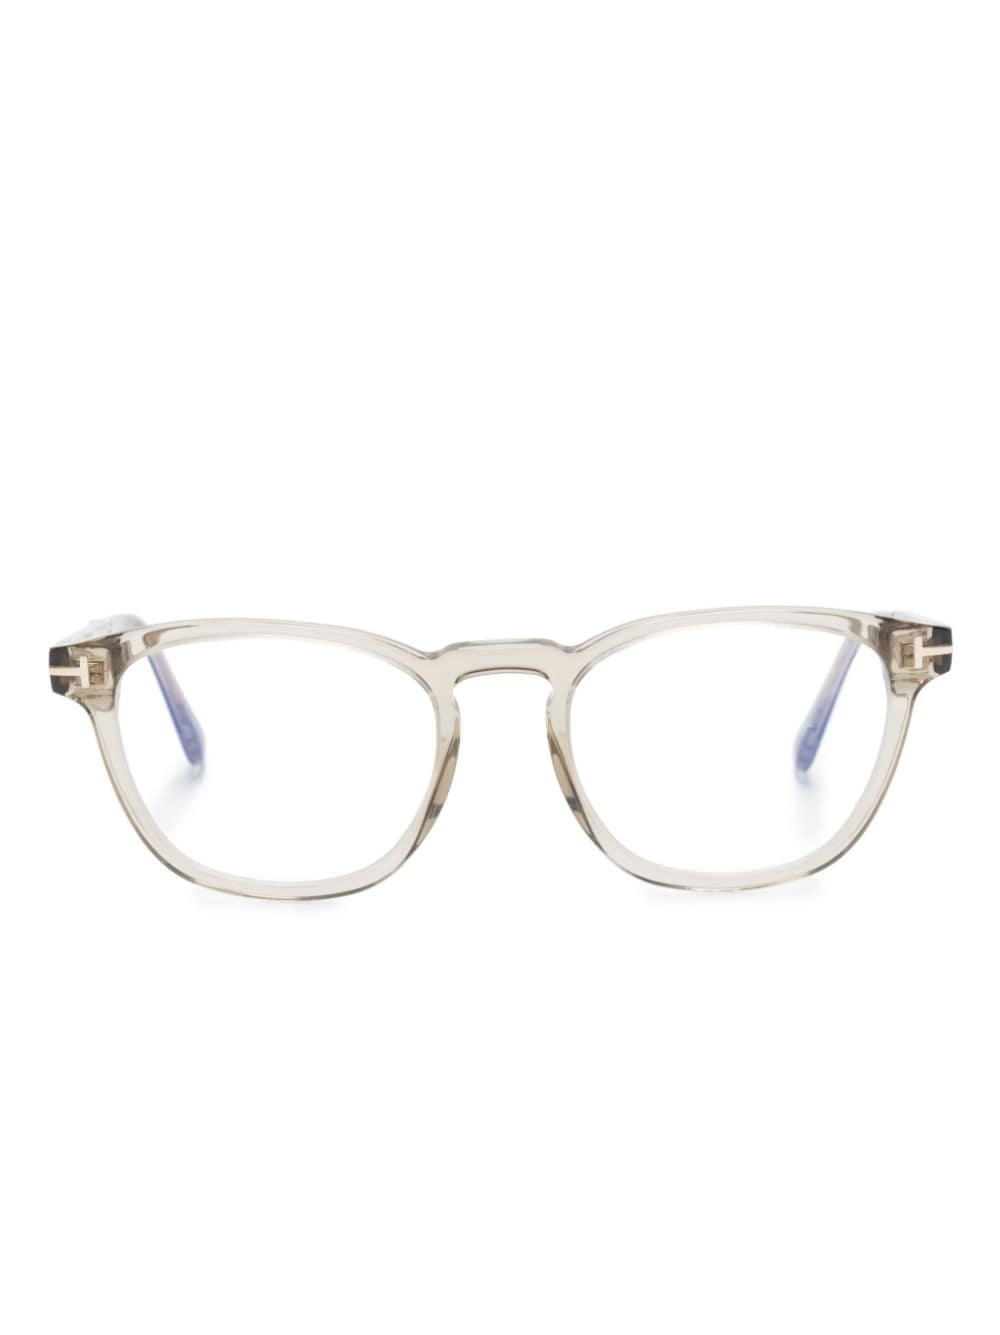 TOM FORD Eyewear Tortoiseshell Clear Round Glasses - Farfetch